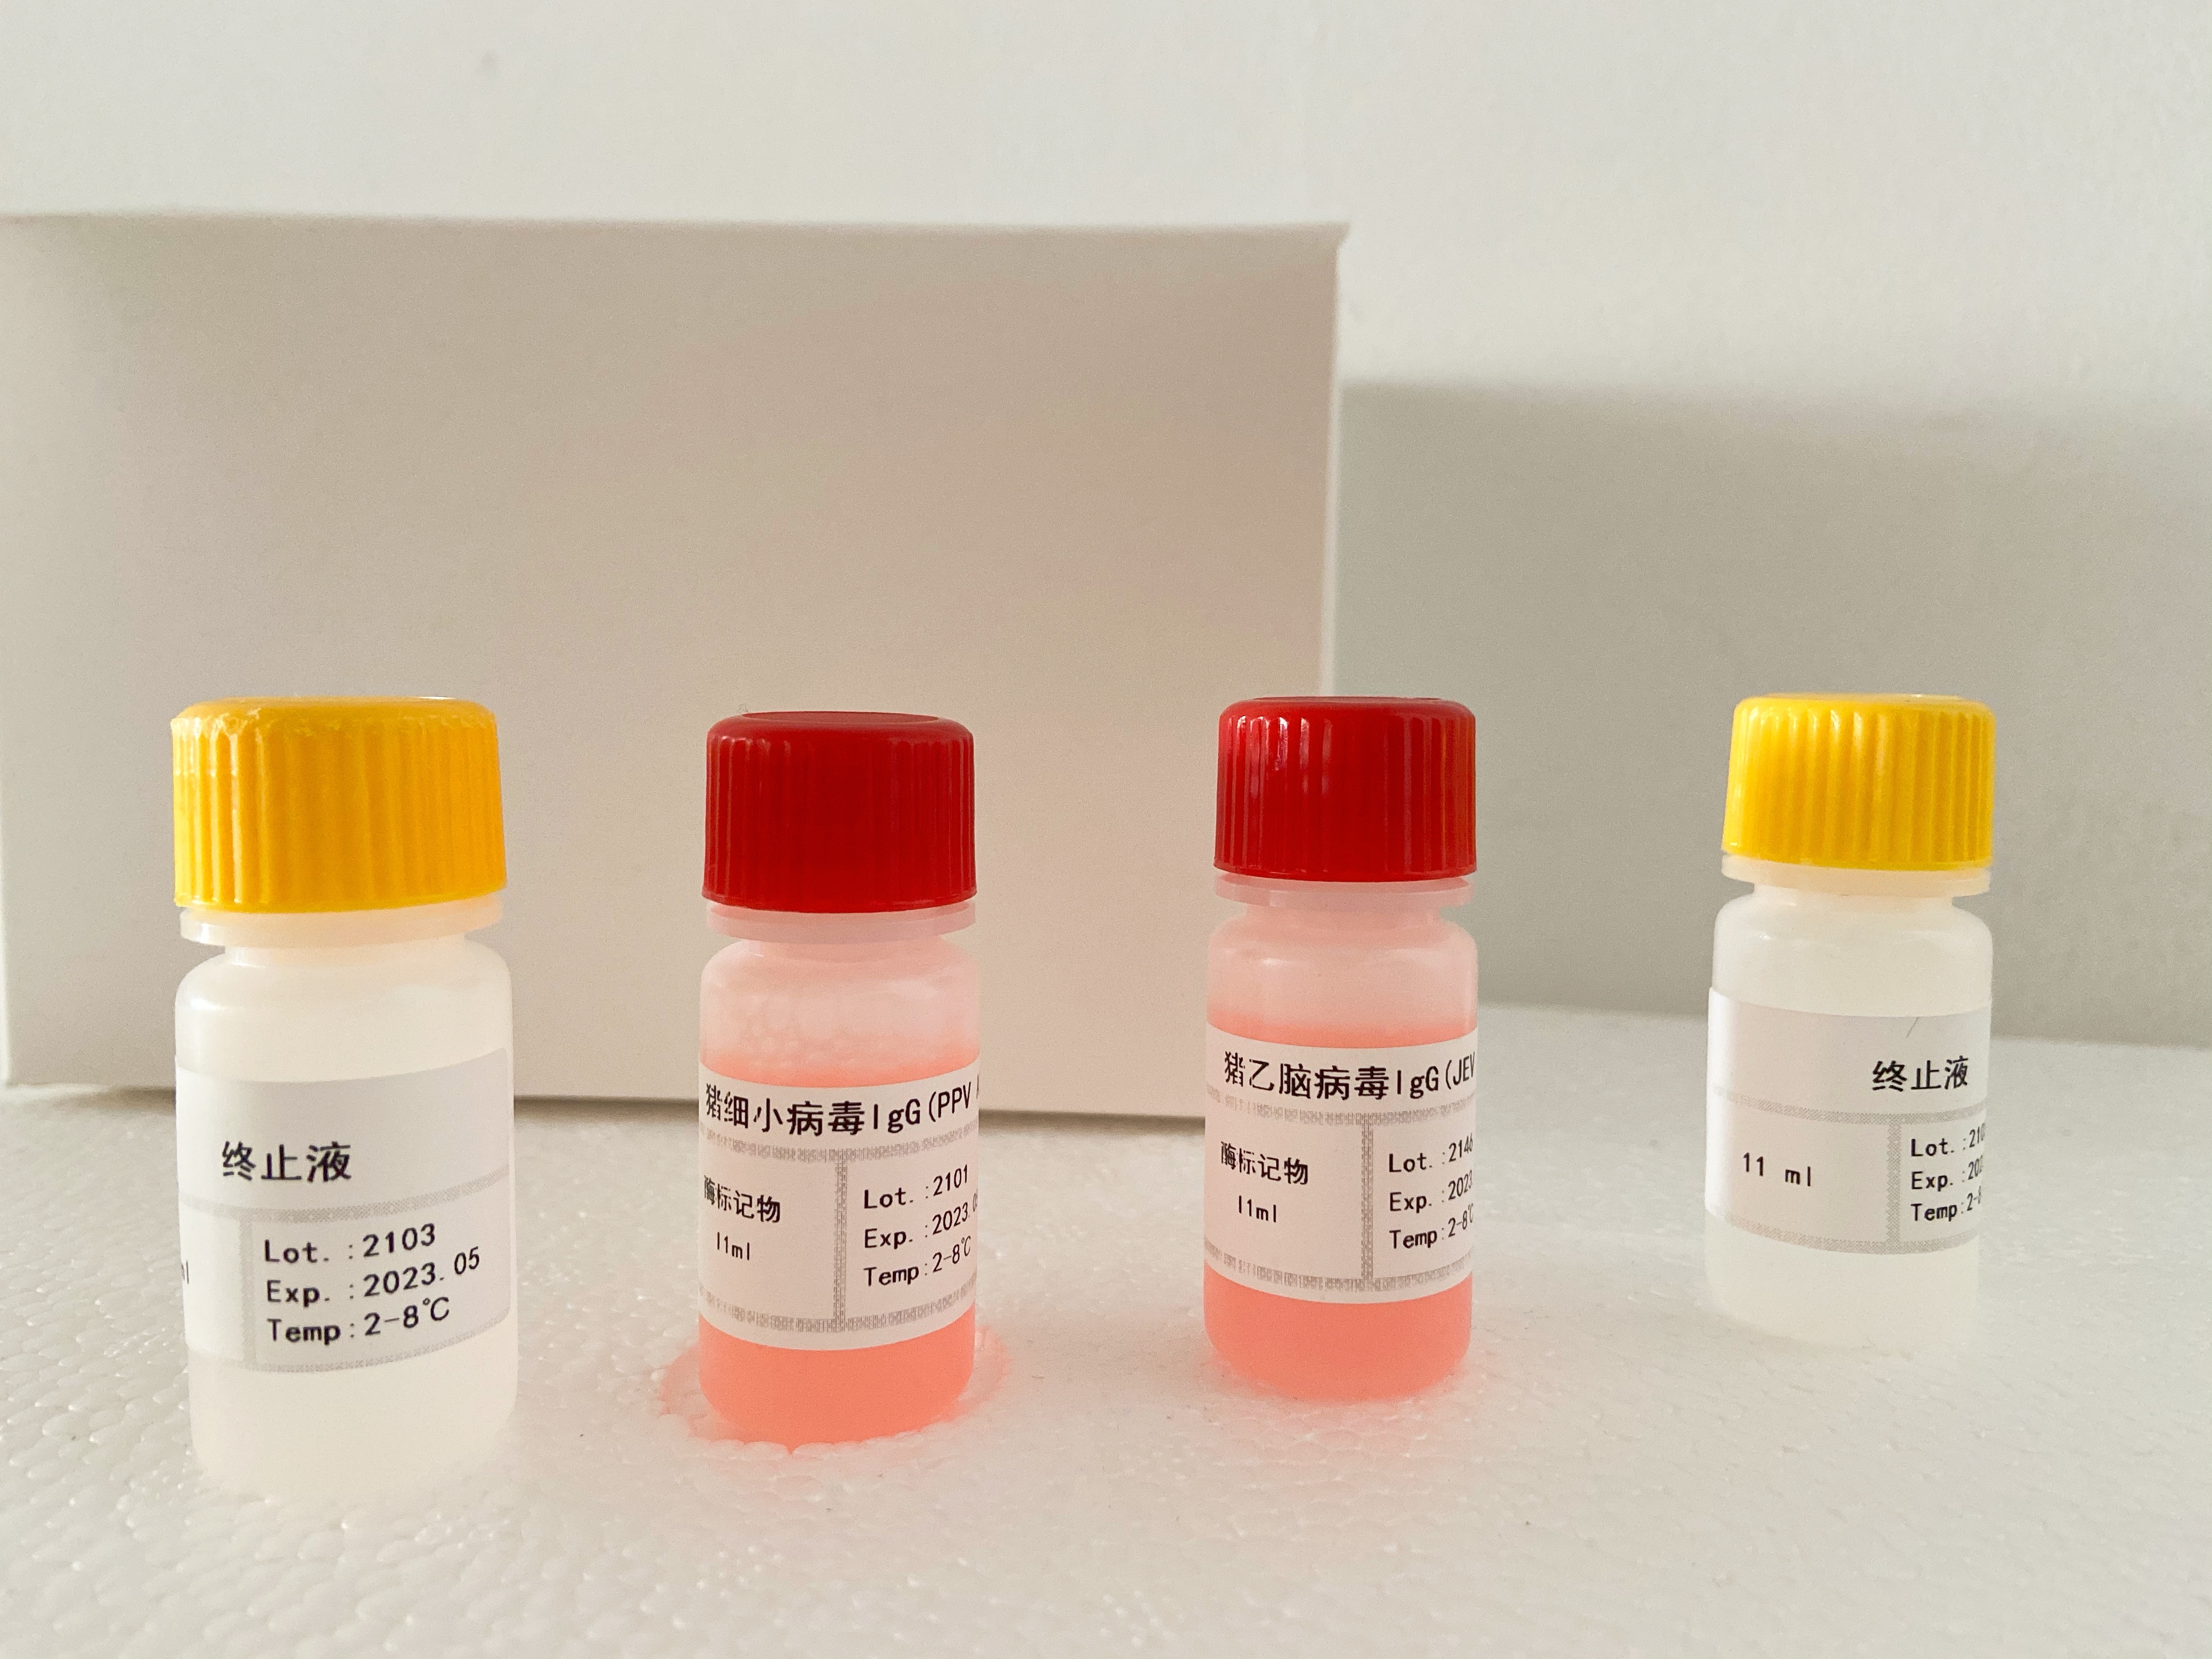 小鼠抗核抗体IgG 检测试剂盒